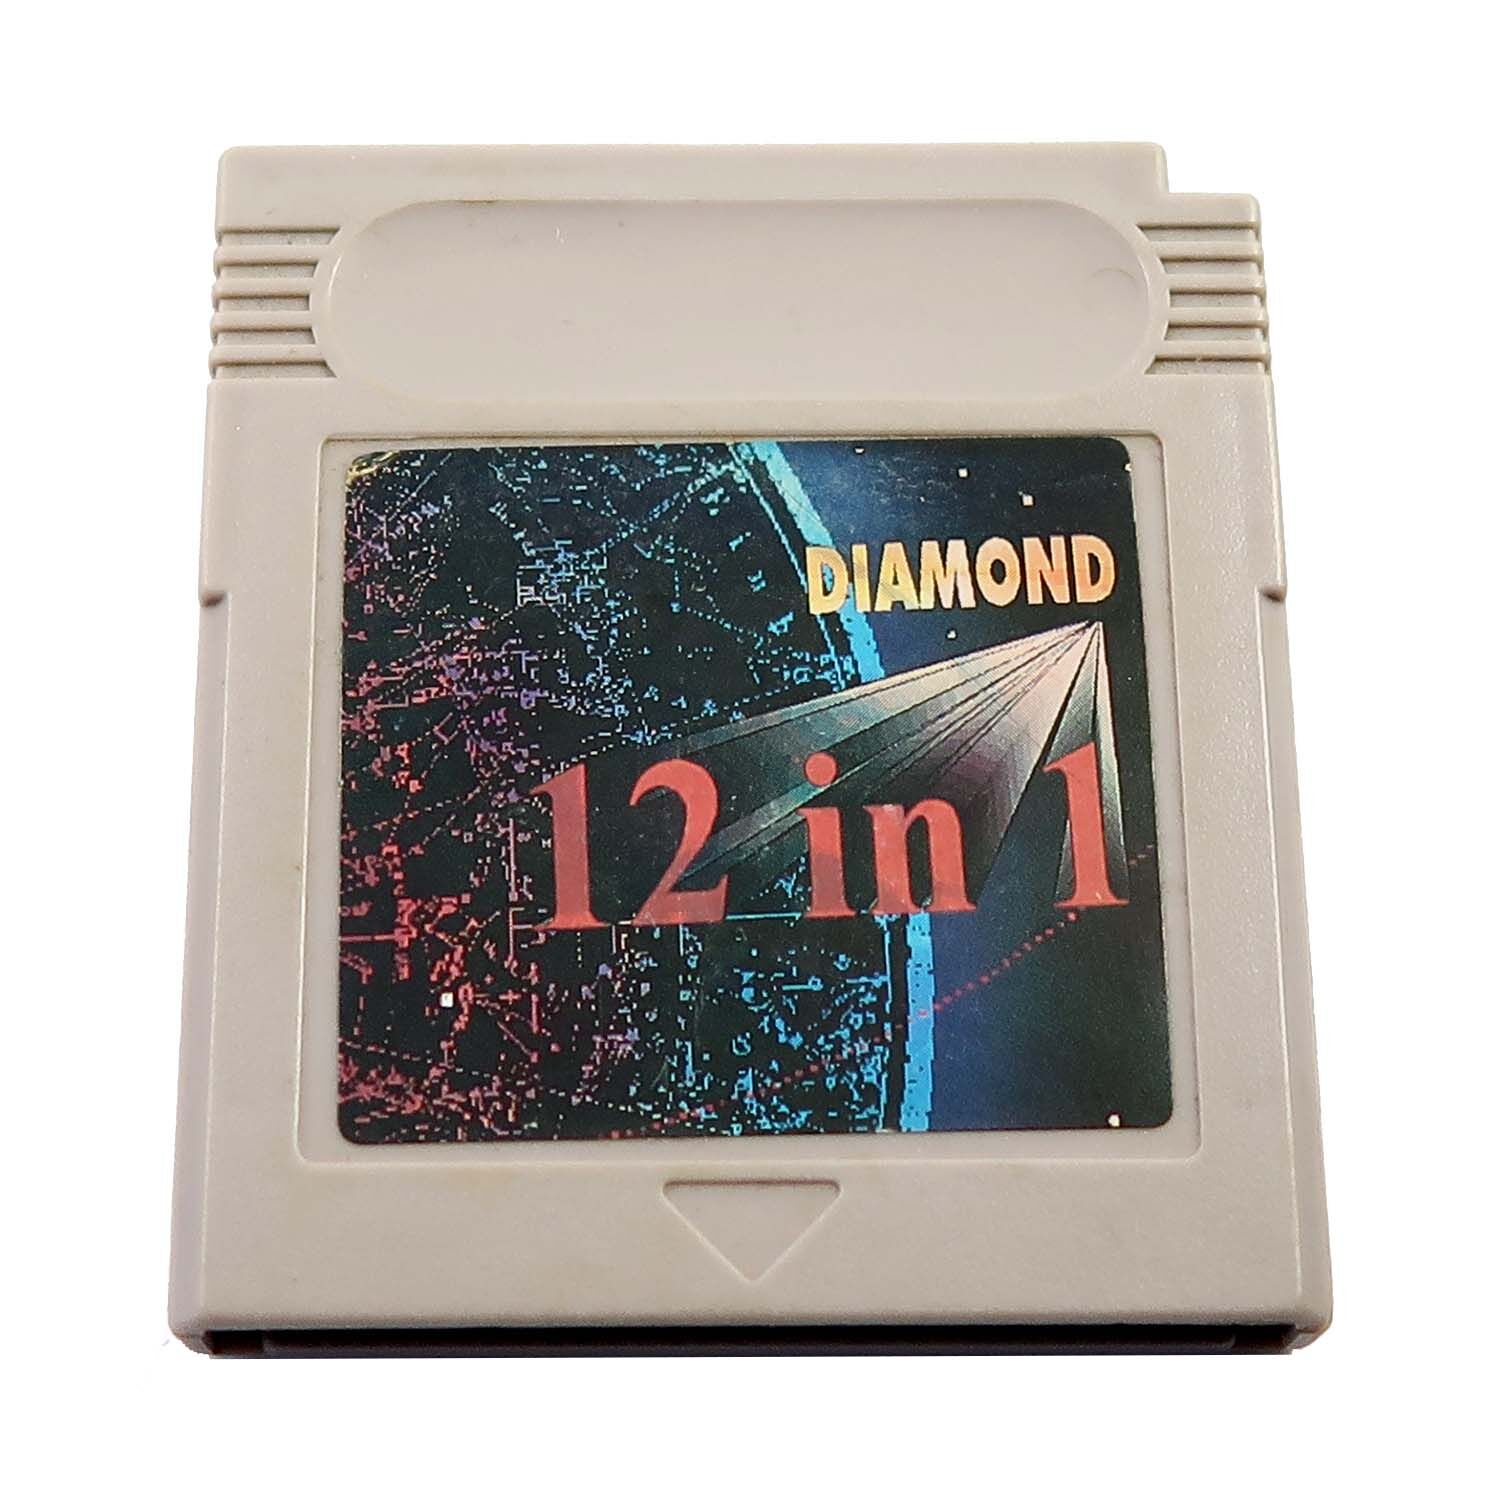 Diamond 12 in 1 Replika - Game Boy